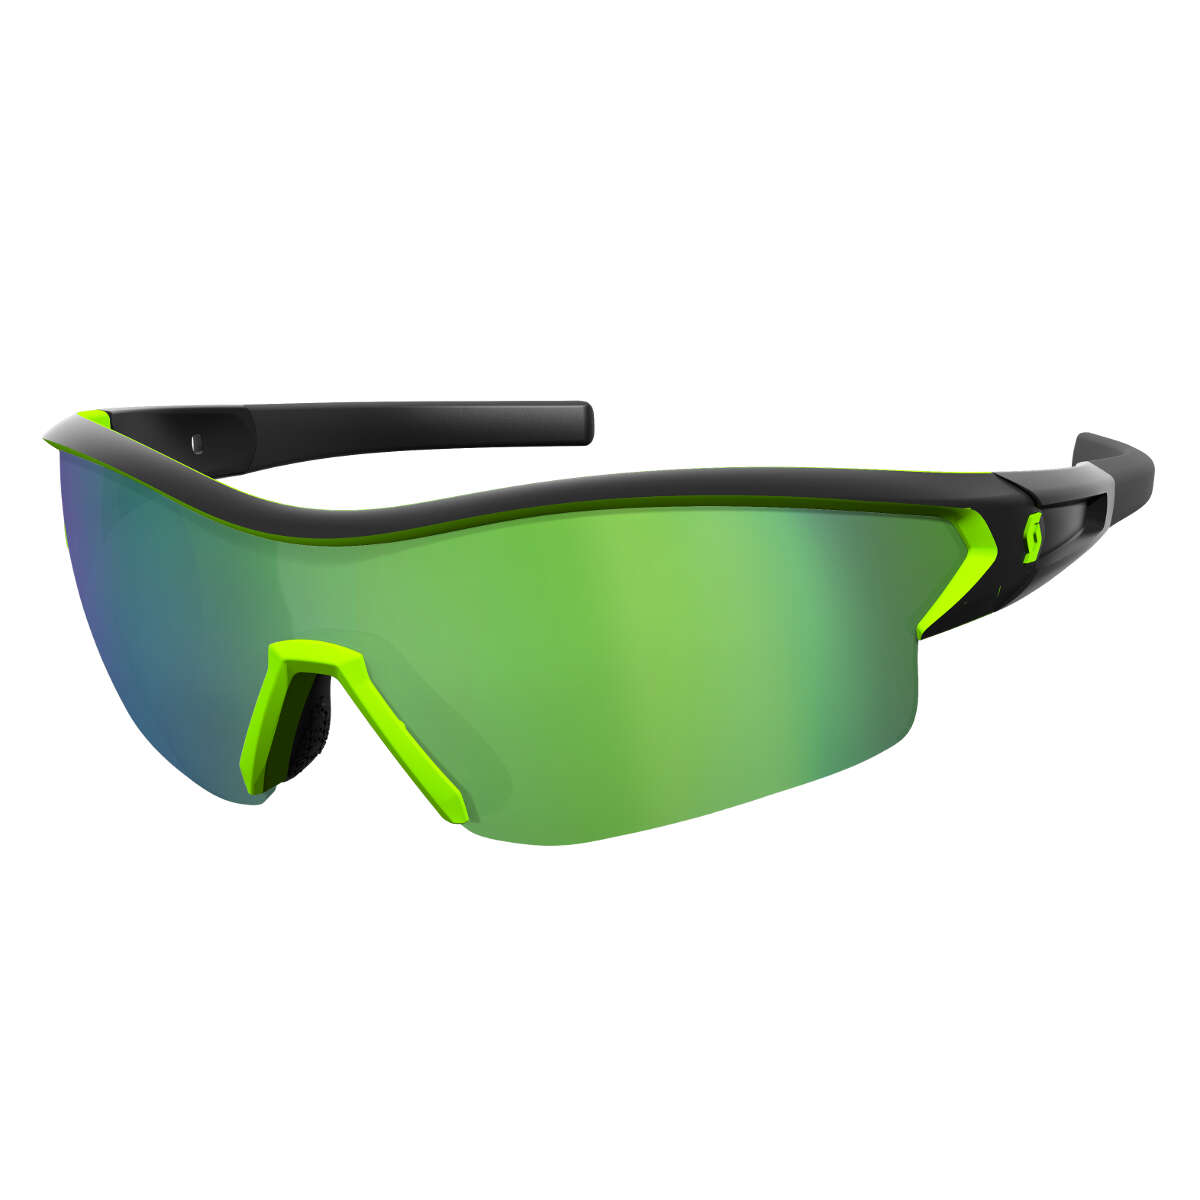 Scott Sportbrille Leap Matt-Schwarz/Neongrün - Green Chrome